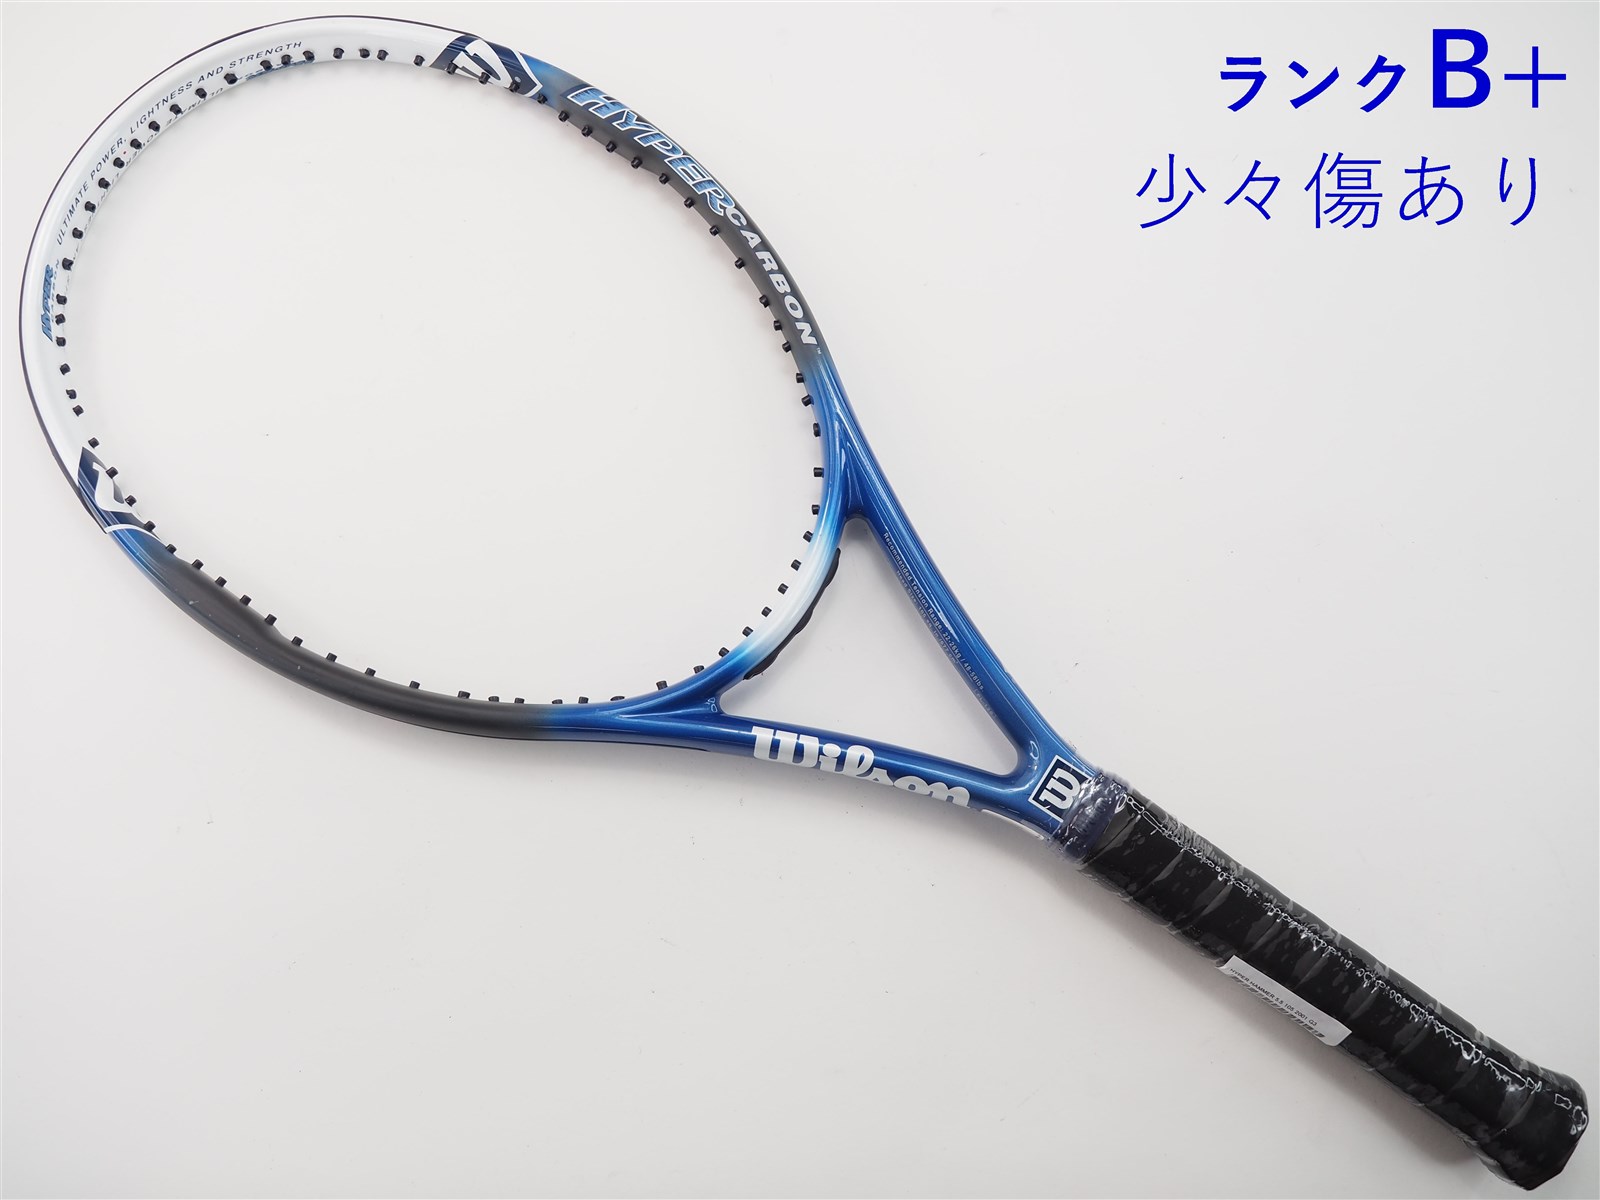 テニスラケット ウィルソン ハイパー ハンマー 5.5 105 2001年モデル